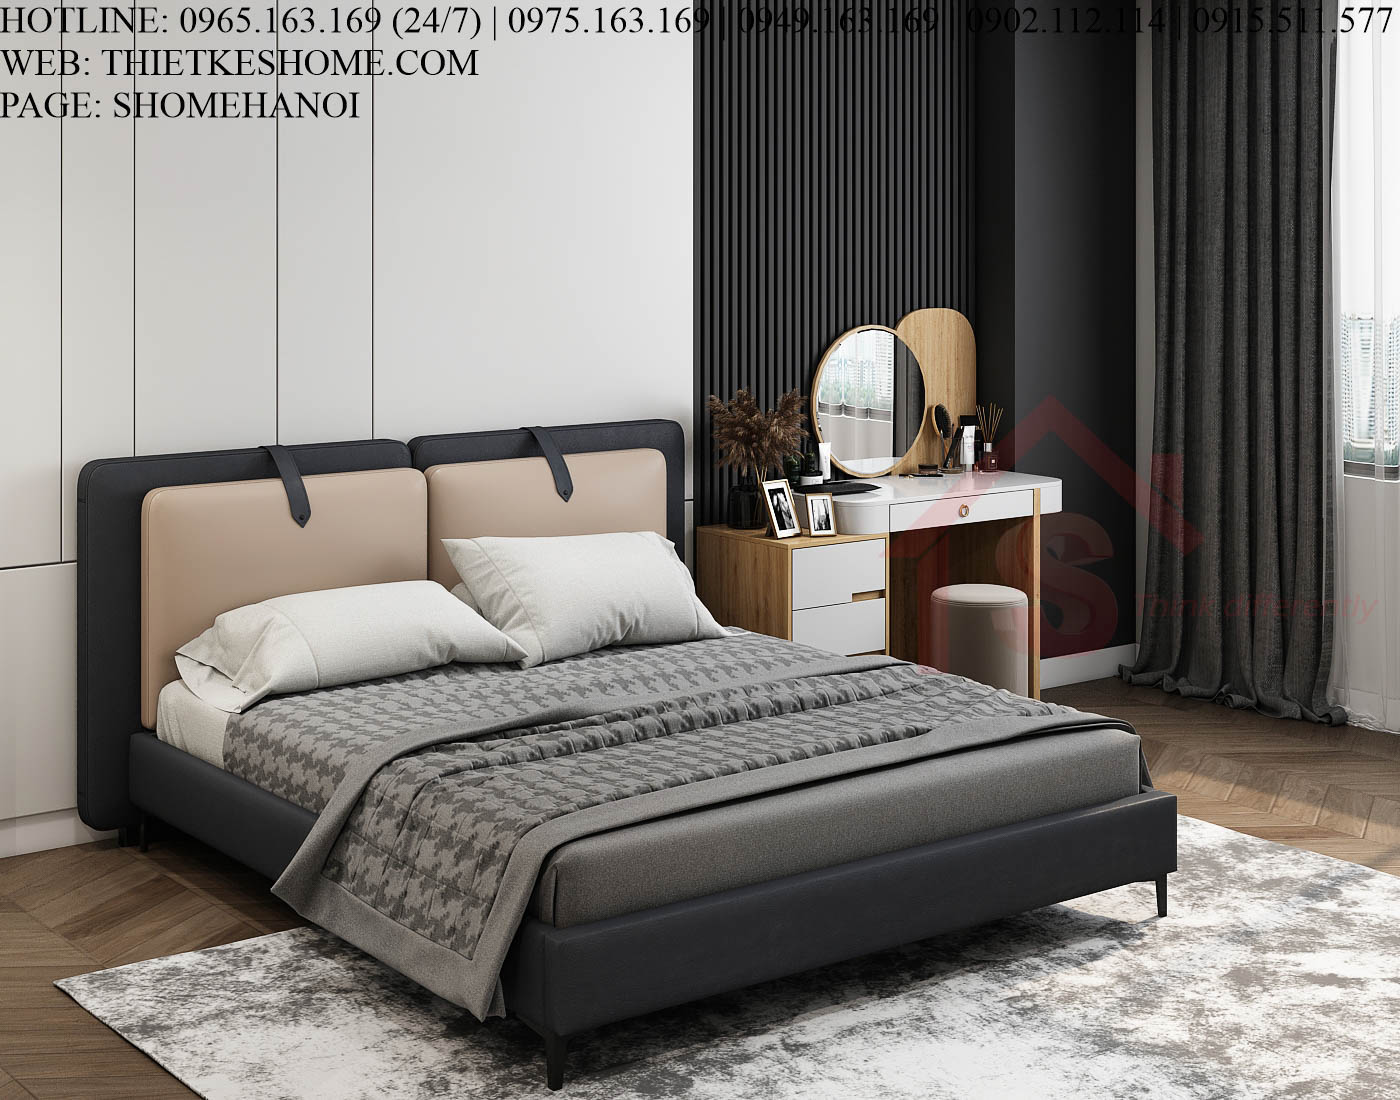 S HOME Combo mẫu nội thất phòng ngủ đẹp hiện đại tiện dụng SHOME6802